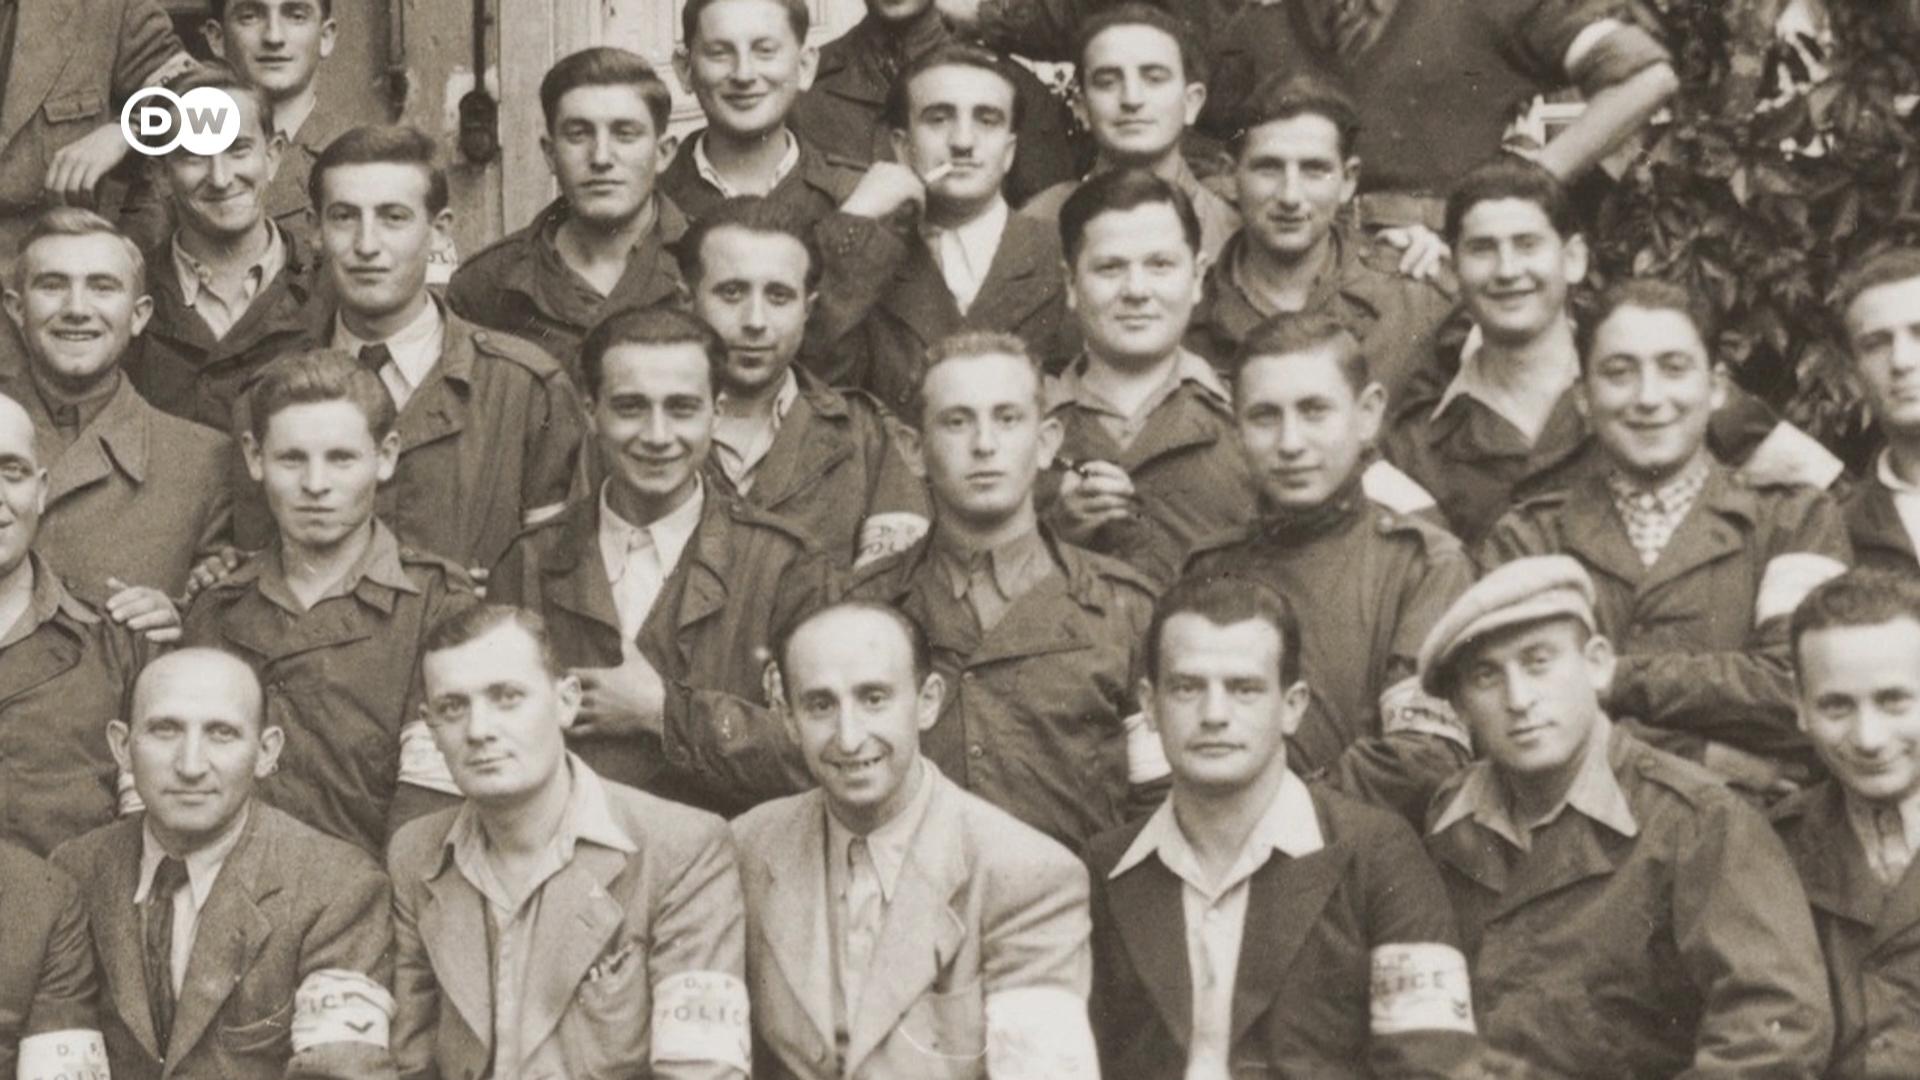 二战期间，约600万犹太人遭到纳粹杀害，其中超过100万人的身份依旧不明。如今一项AI技术可以帮助辨识这些受害者以及幸存者的身份，让家属从老照片中找到亲人。